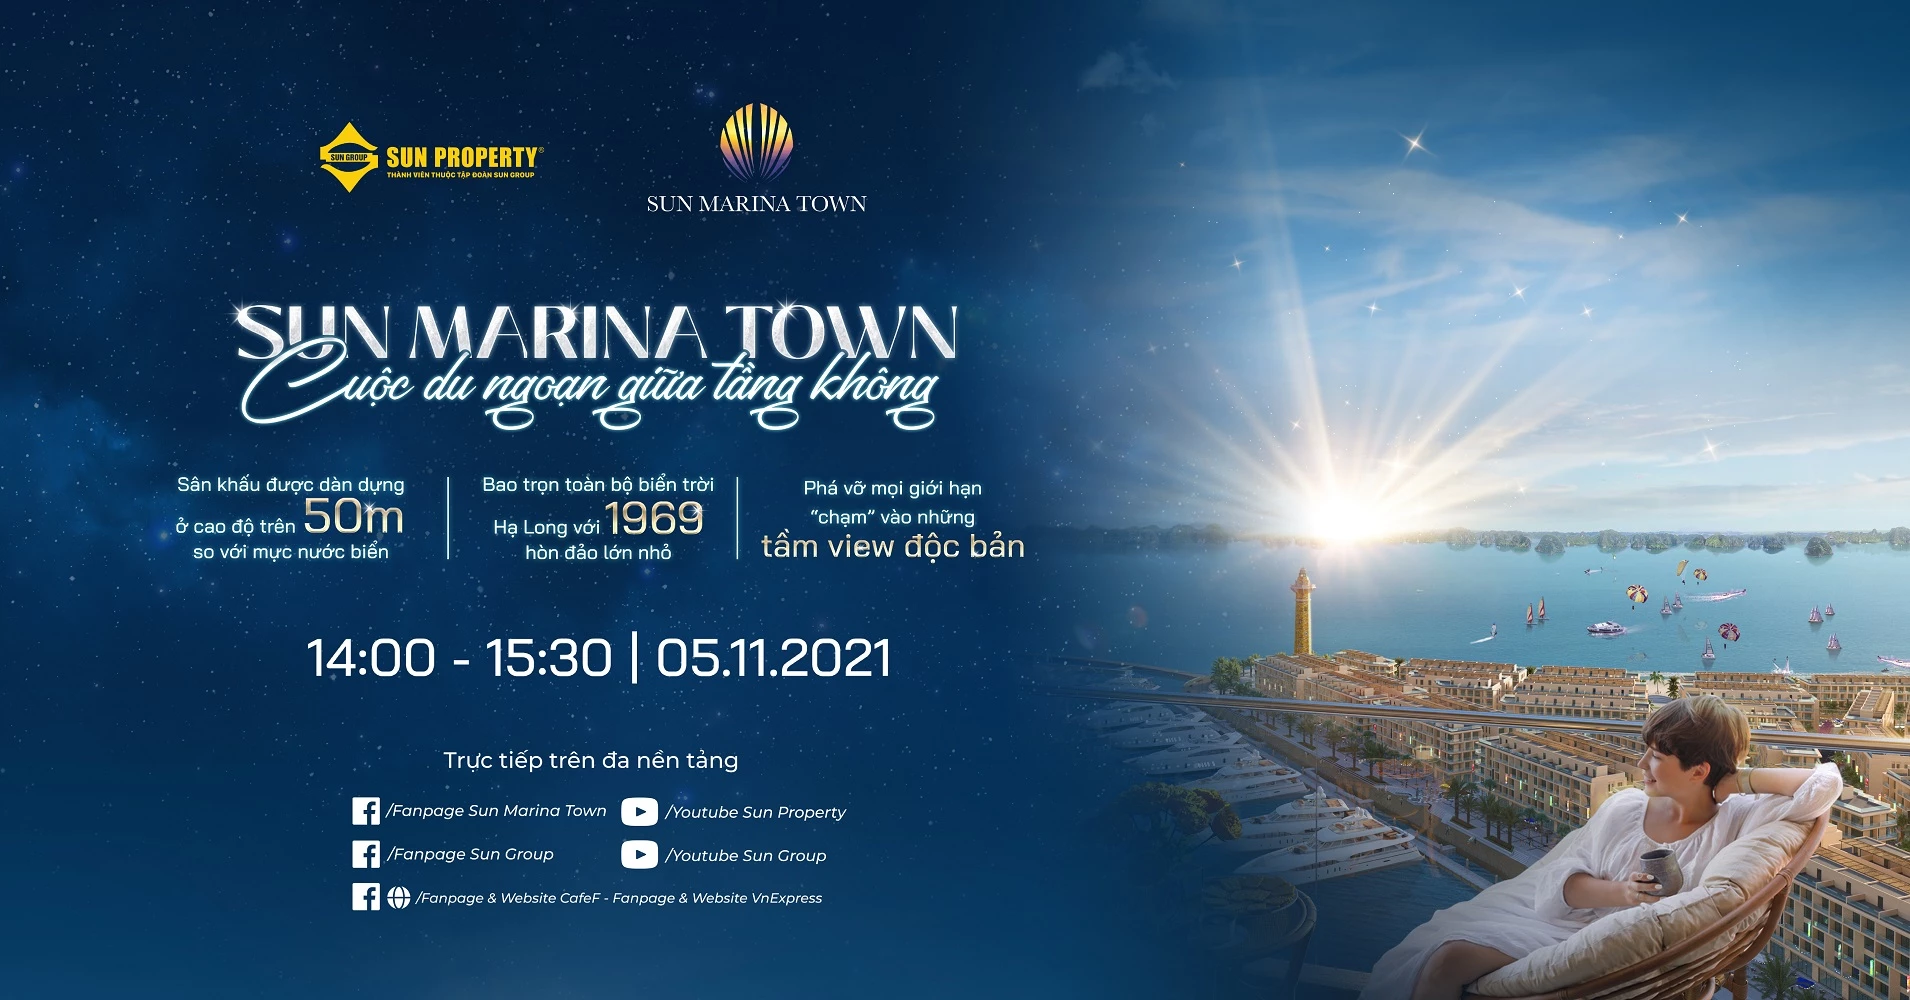 Thông tin sự kiện Sun Marina Town - Cuộc du ngoạn giữa tầng không.